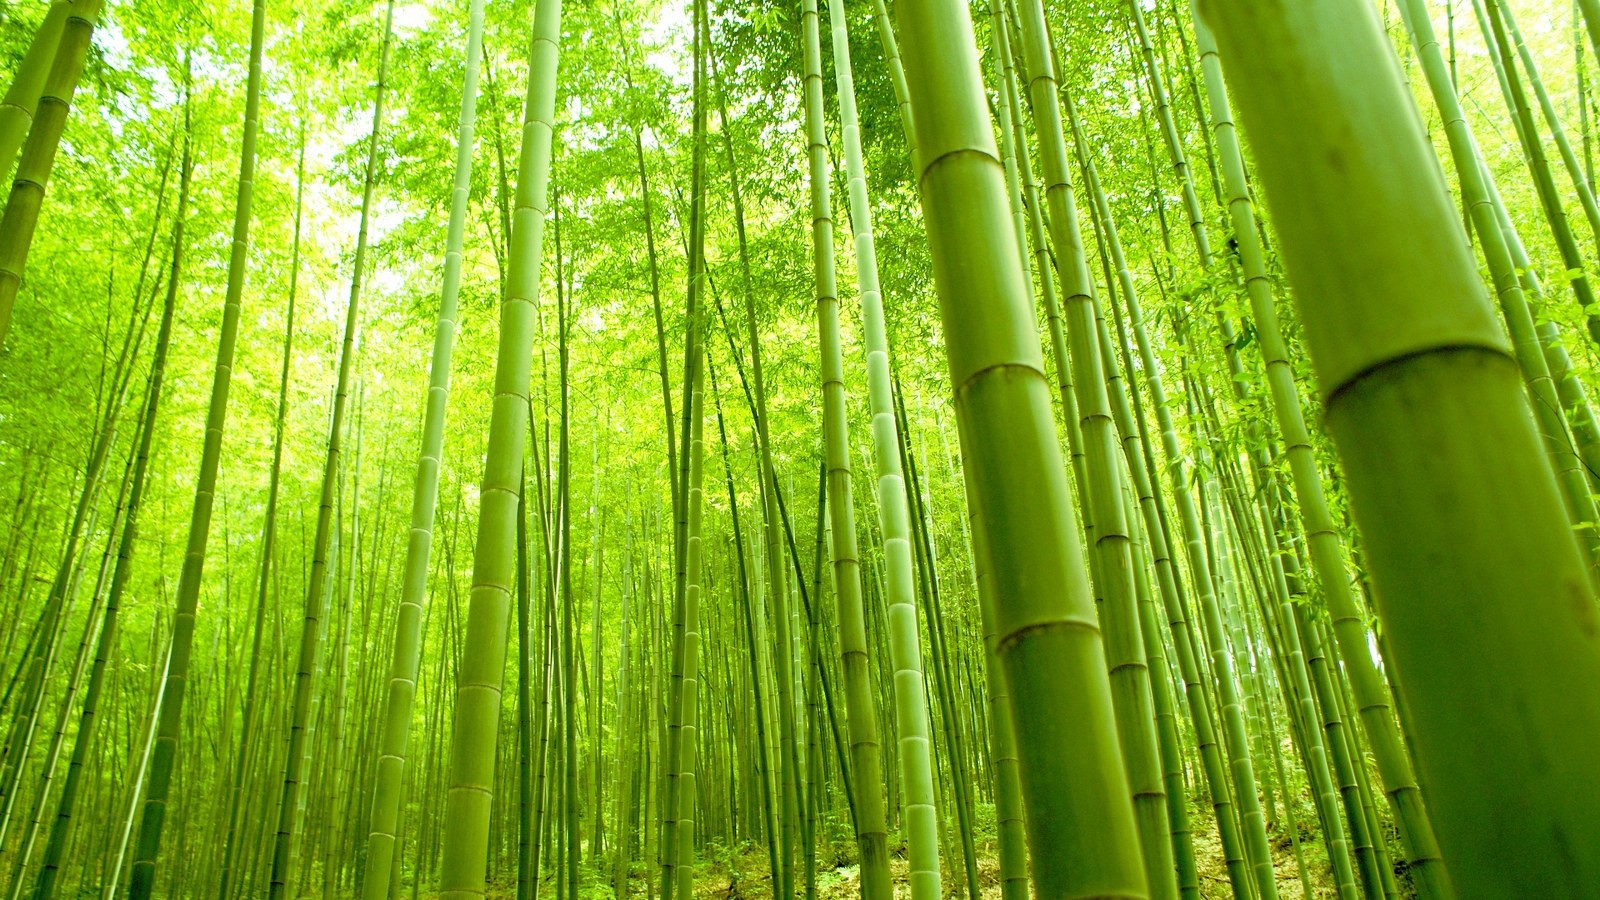 竹子是一种神奇的植物和材料!